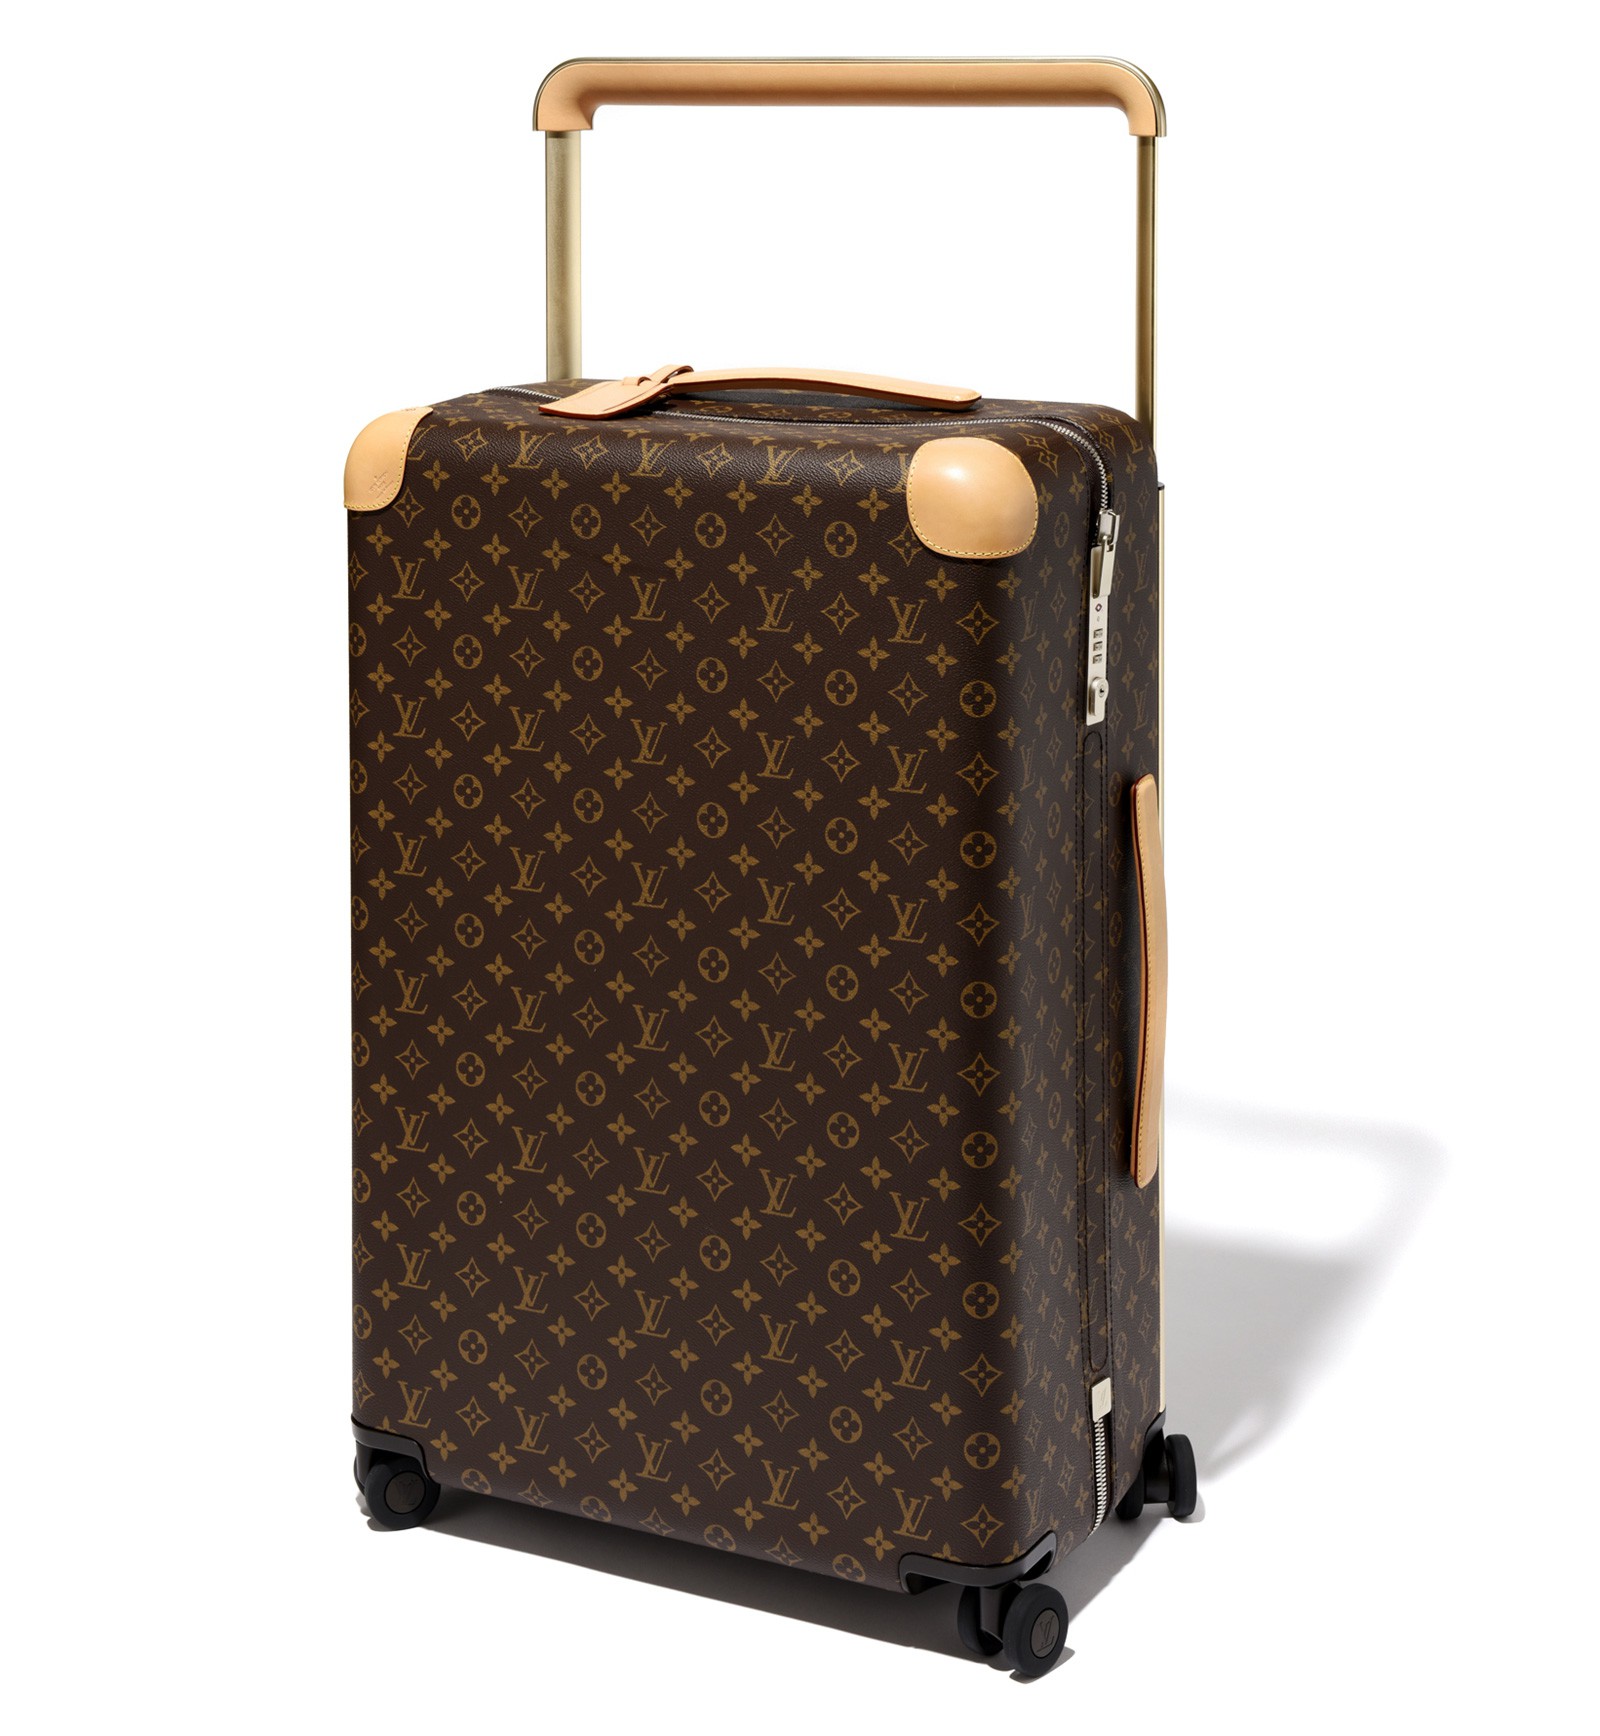 大人の旅行鞄は、ルイ・ヴィトンの「モノグラム」のほかは考えられない